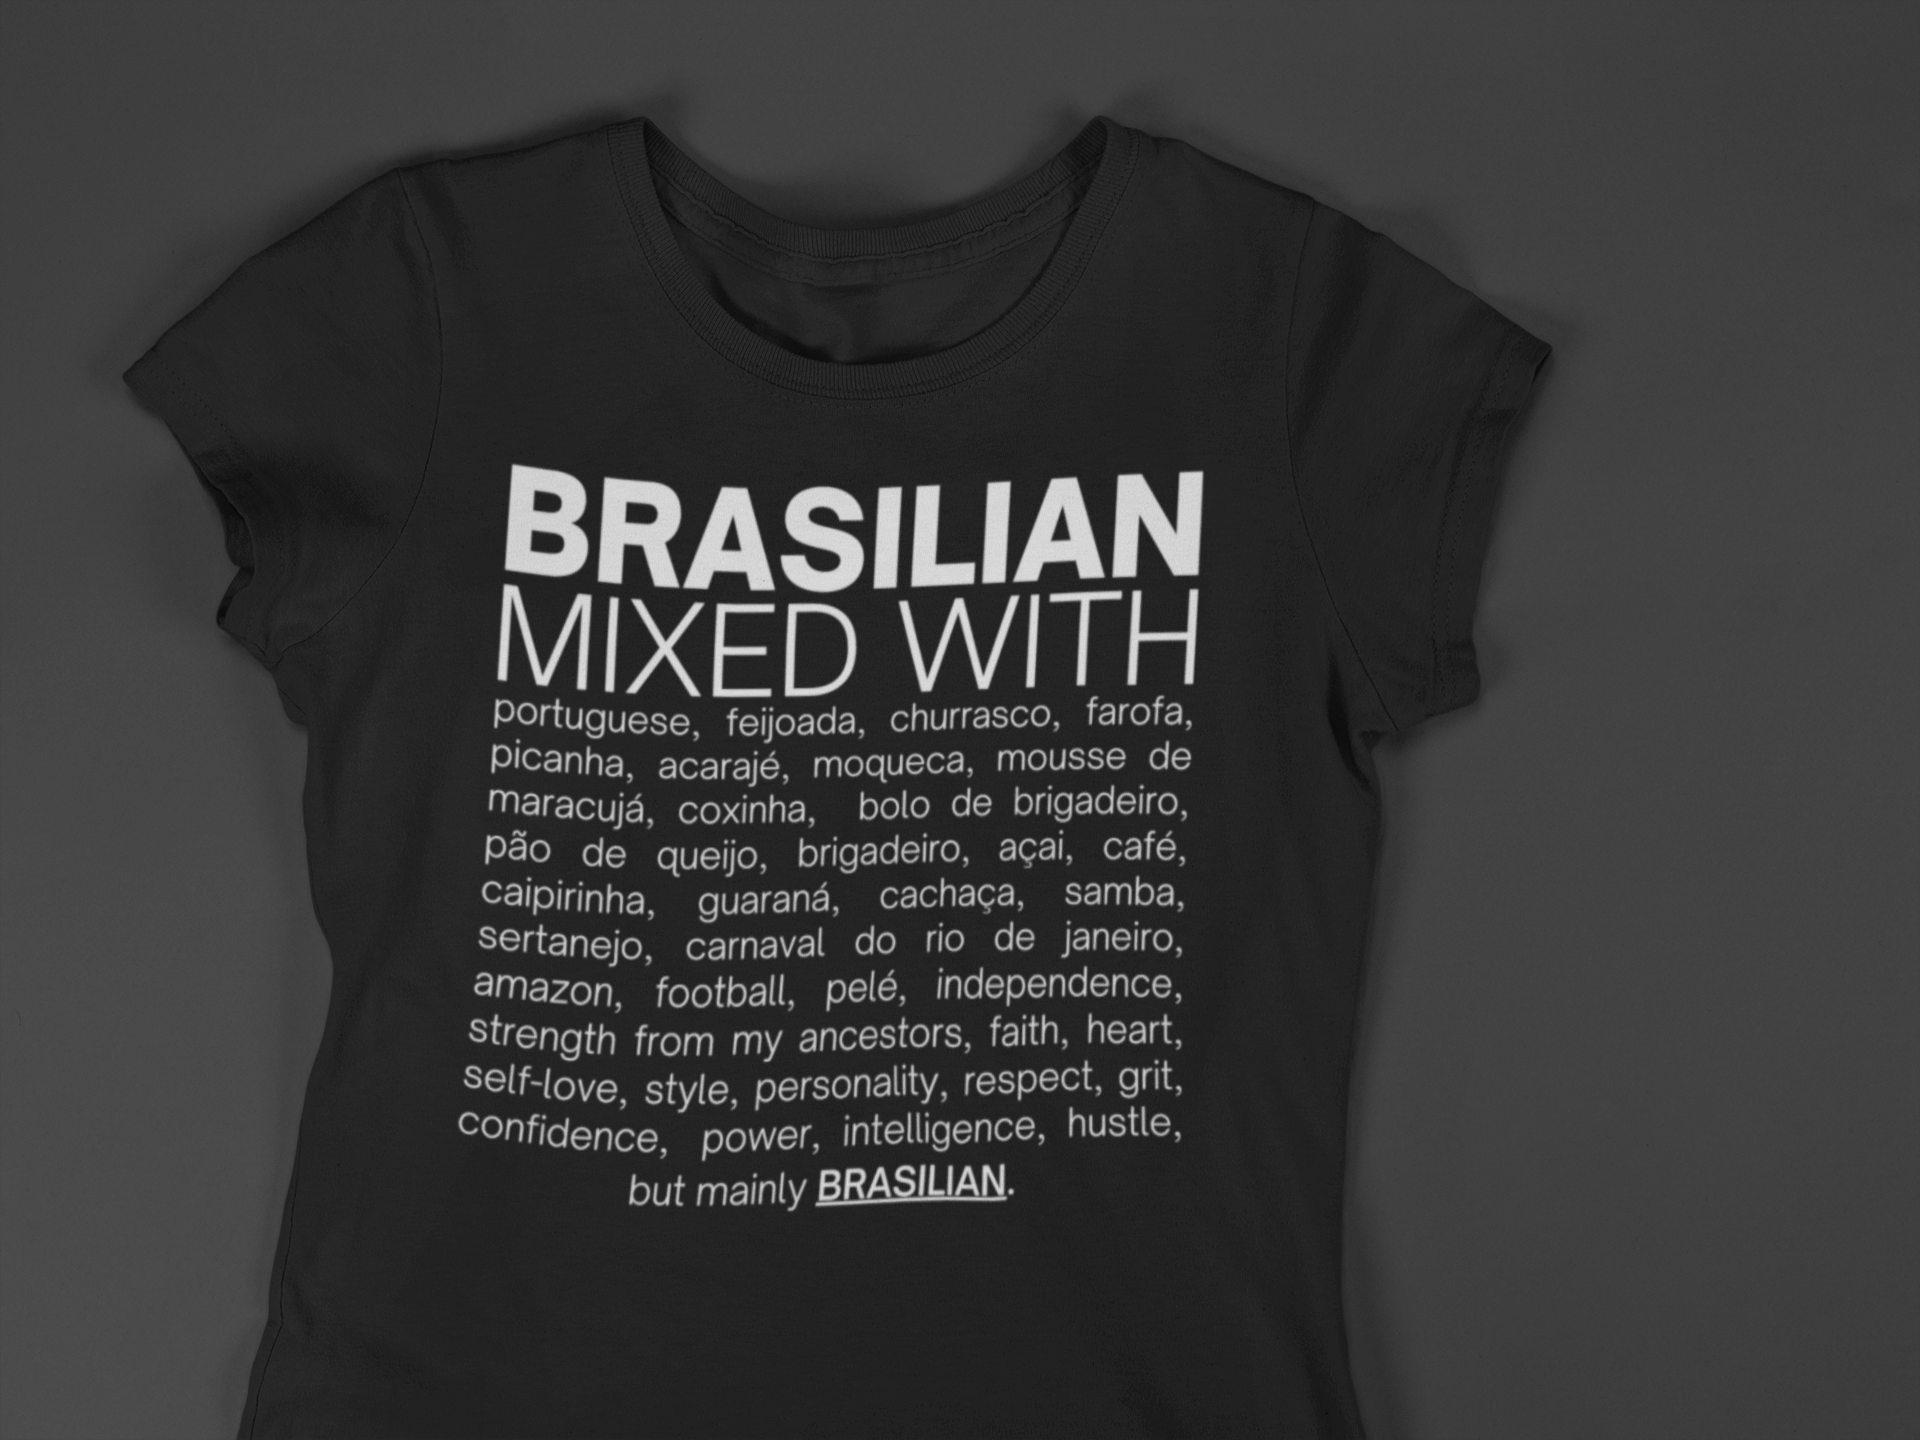 Brasilian Mixed With "Feijoada & Samba" T-shirt